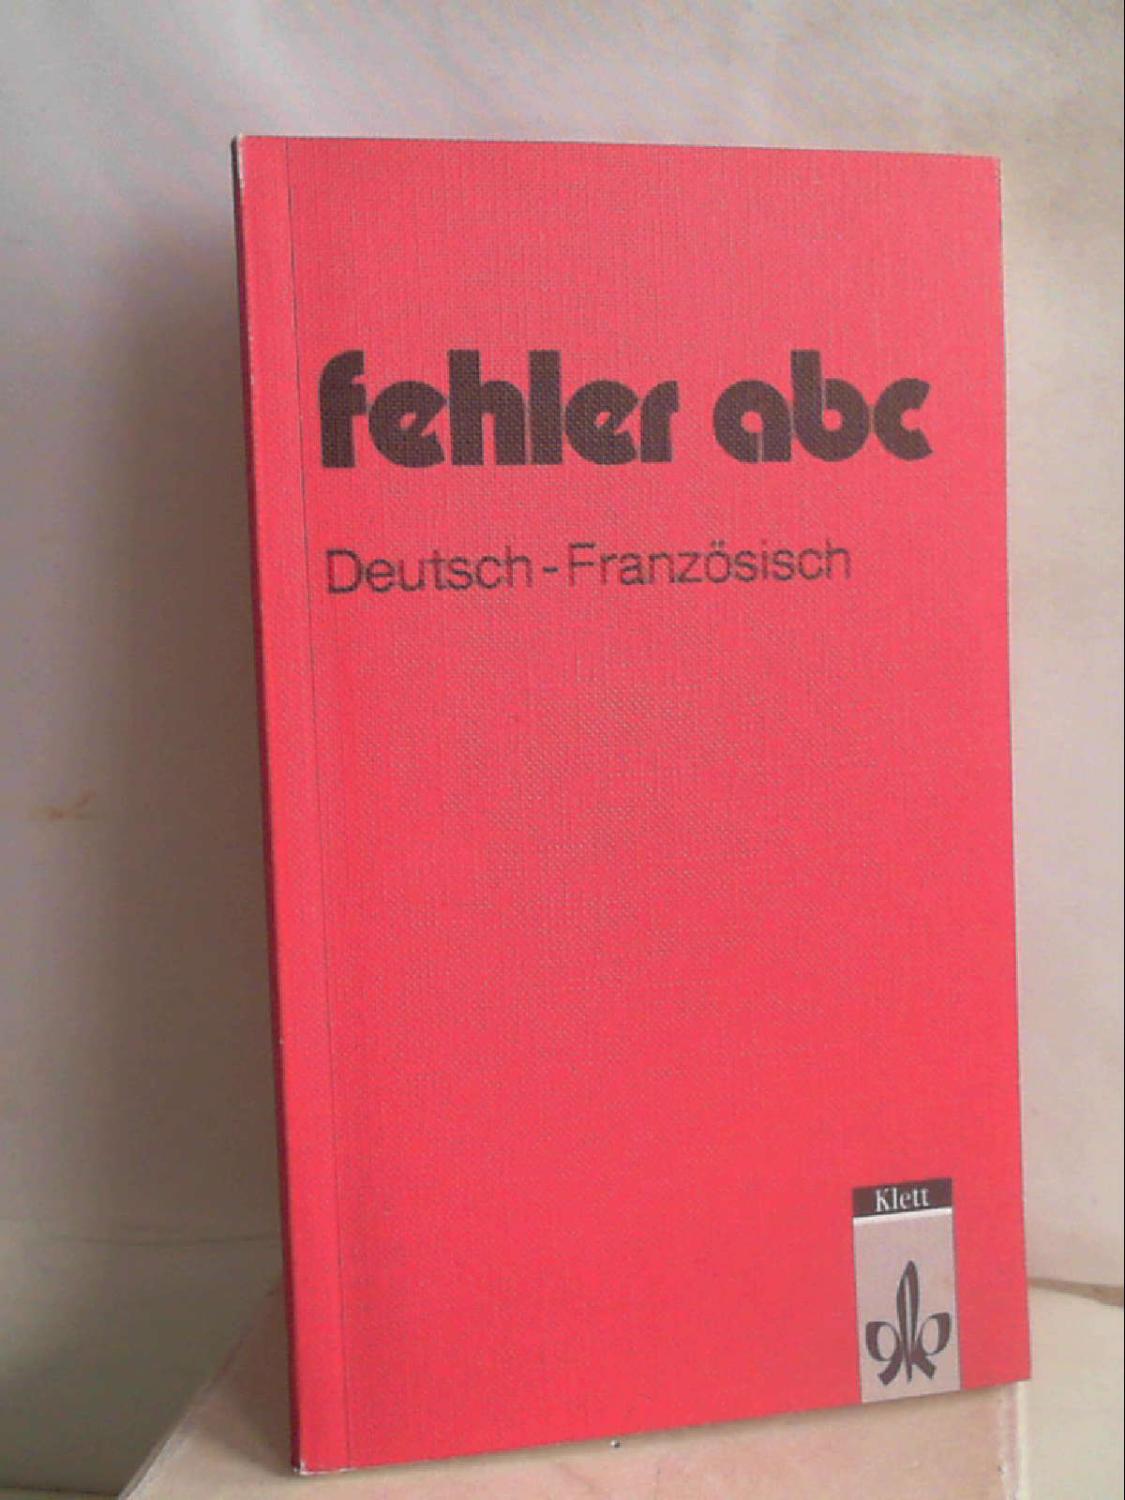 fehler abc, Deutsch - Französisch